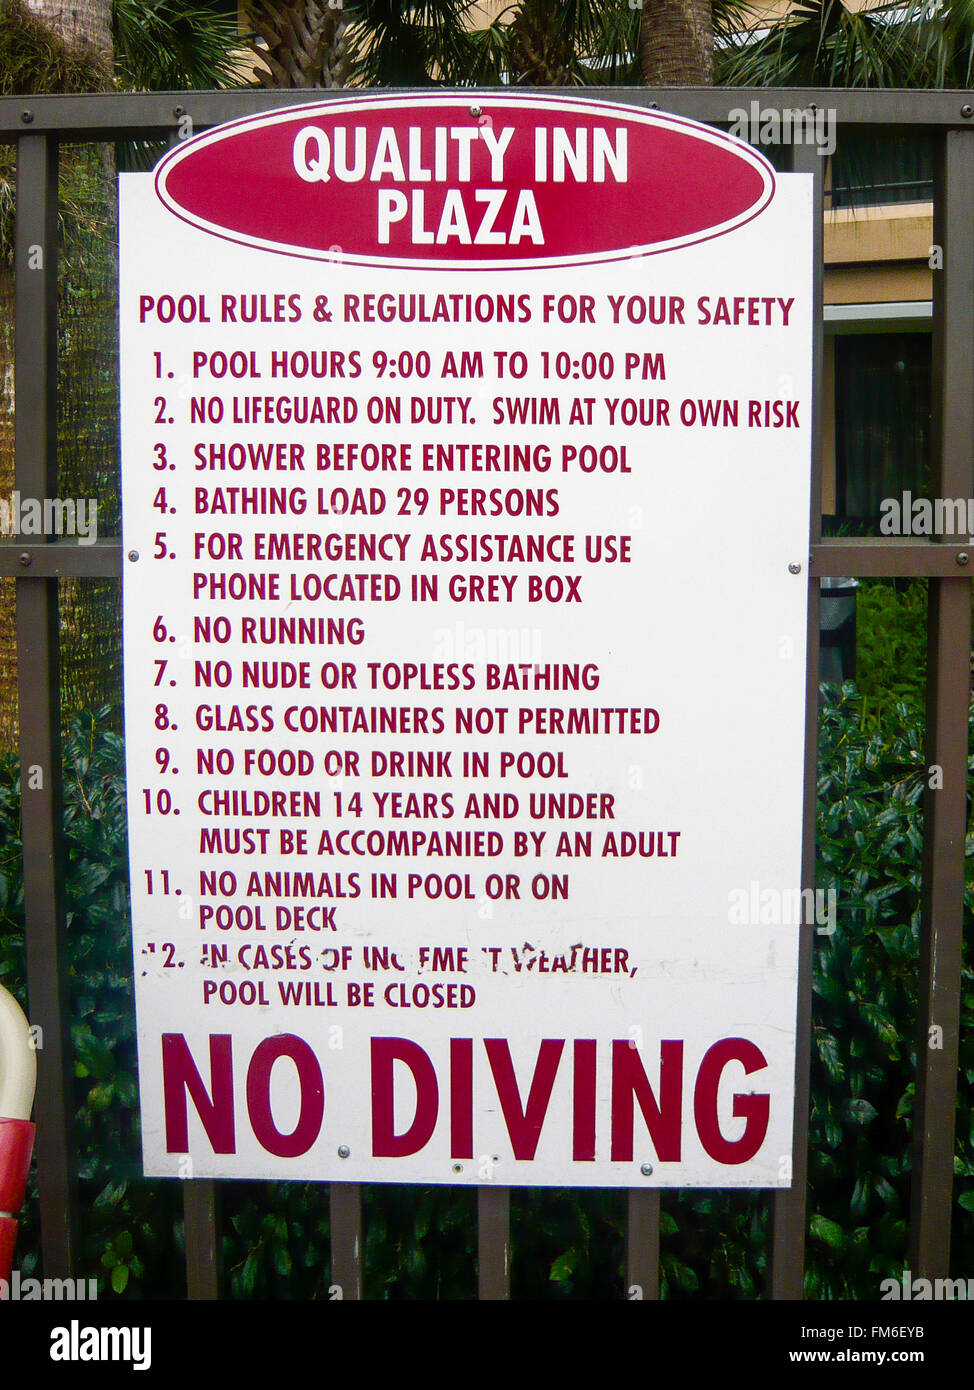 Norme da parte del pool in un Quality Inn Plaza hotel. Foto Stock